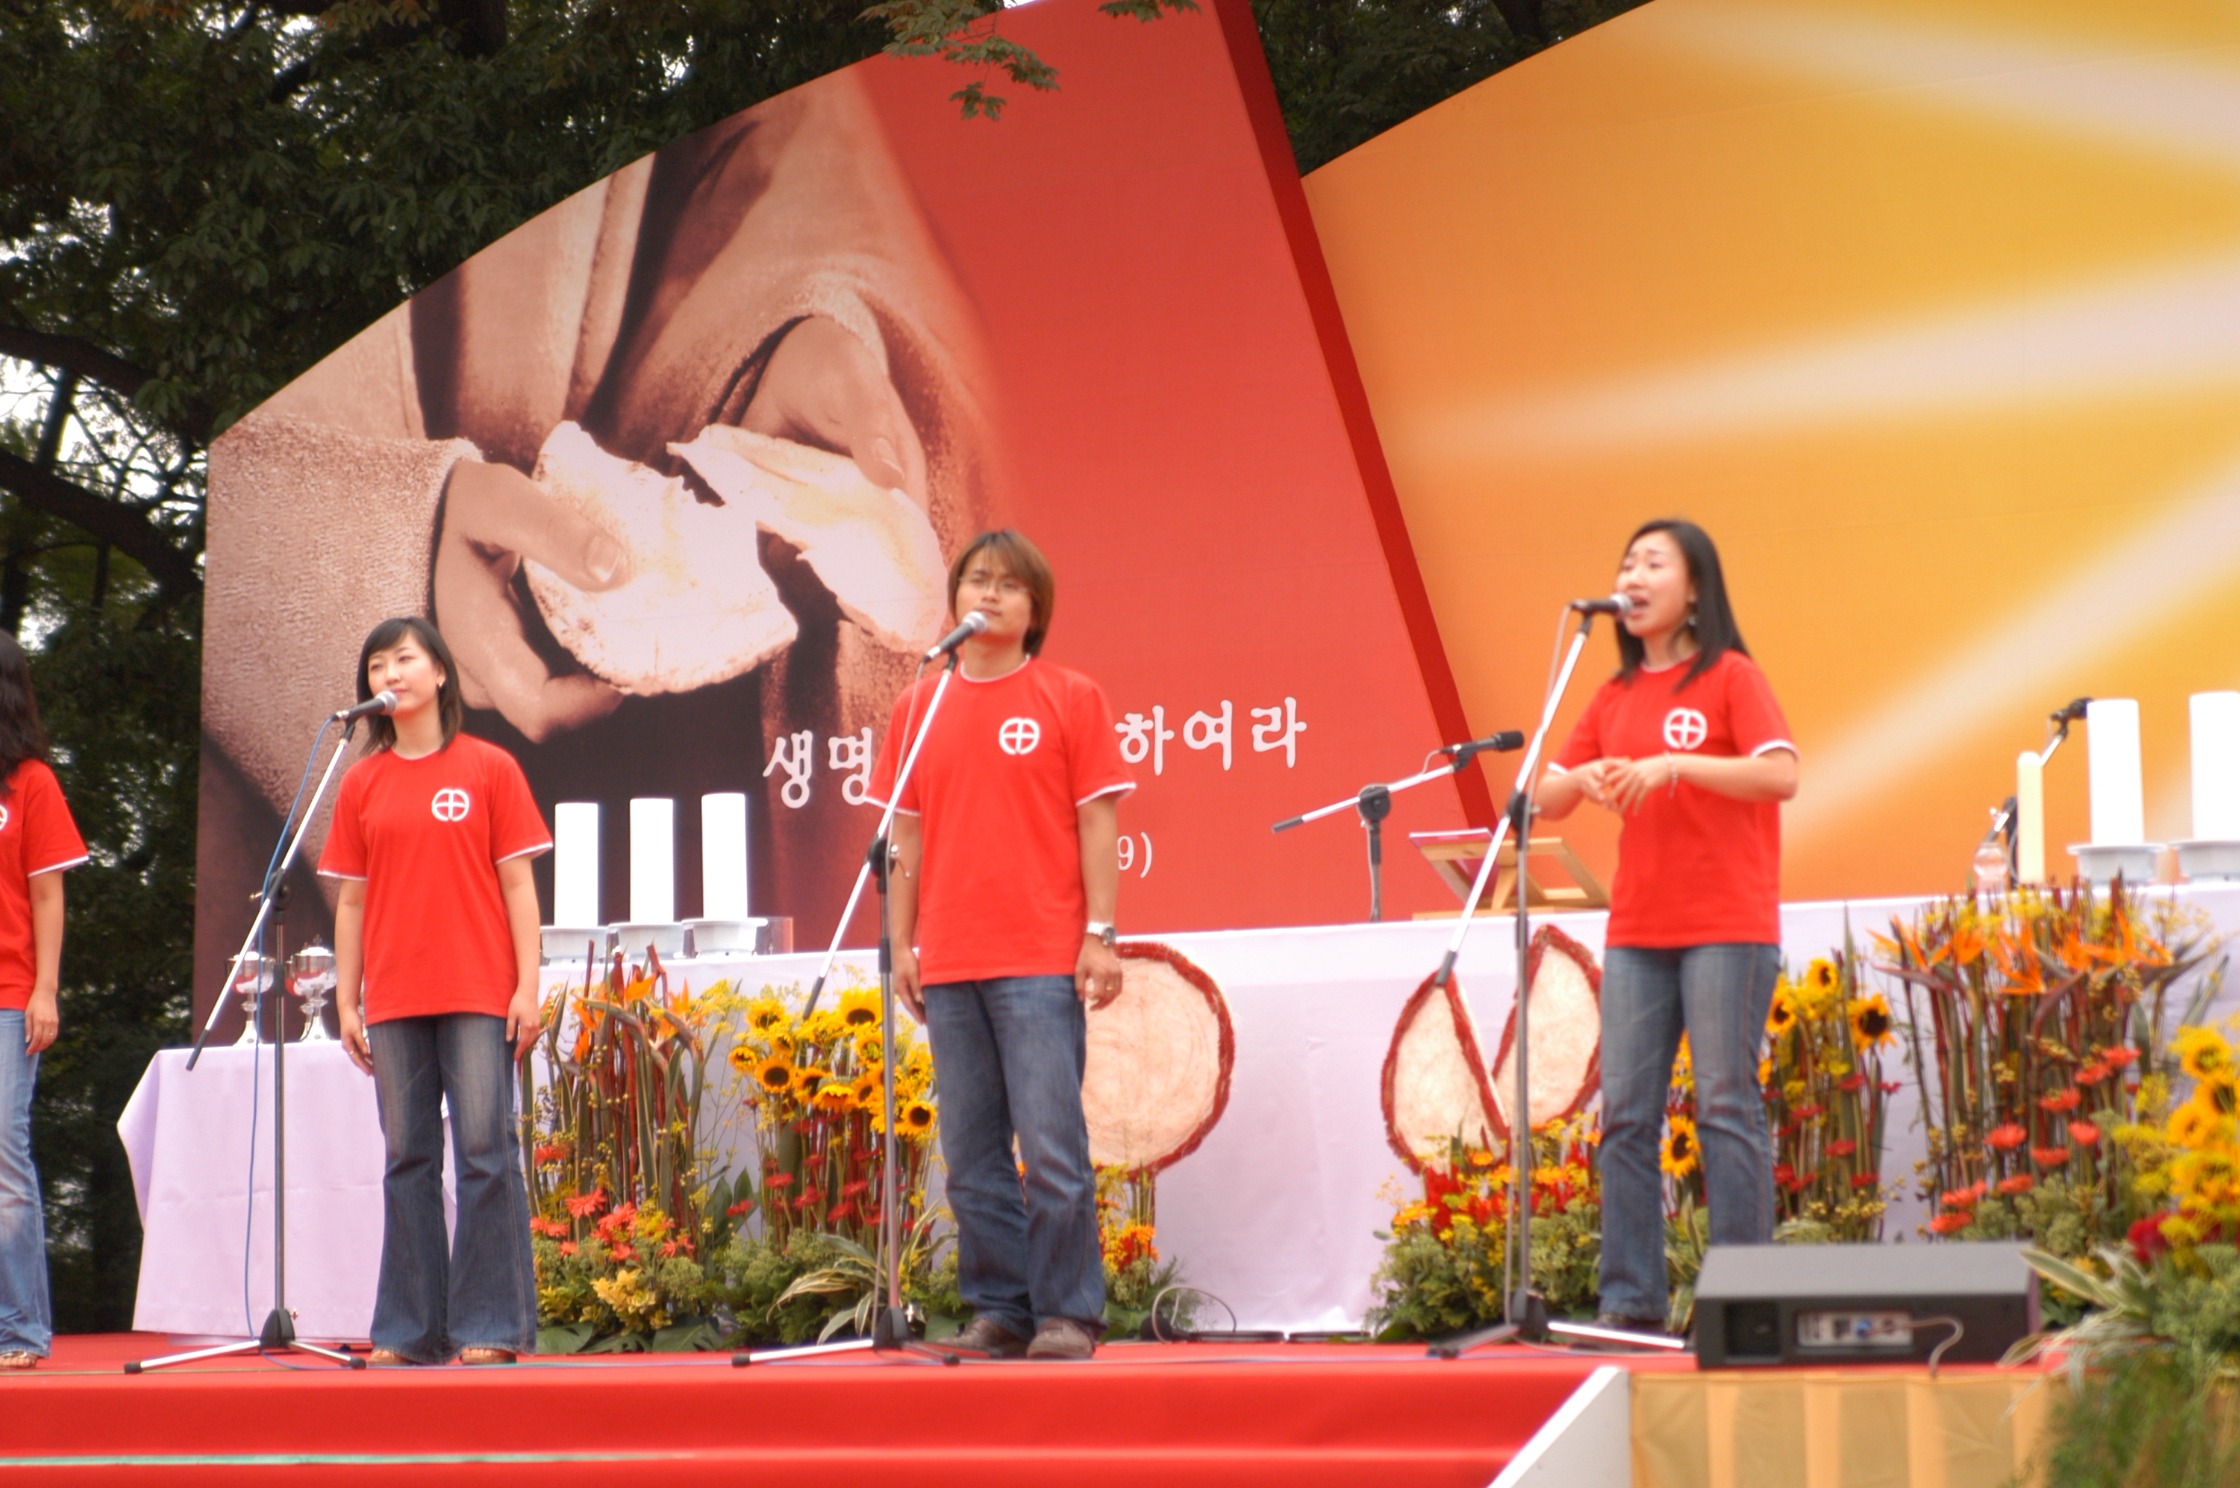 서울대교구성체대회(2006.9.16)의 관련된 이미지 입니다.